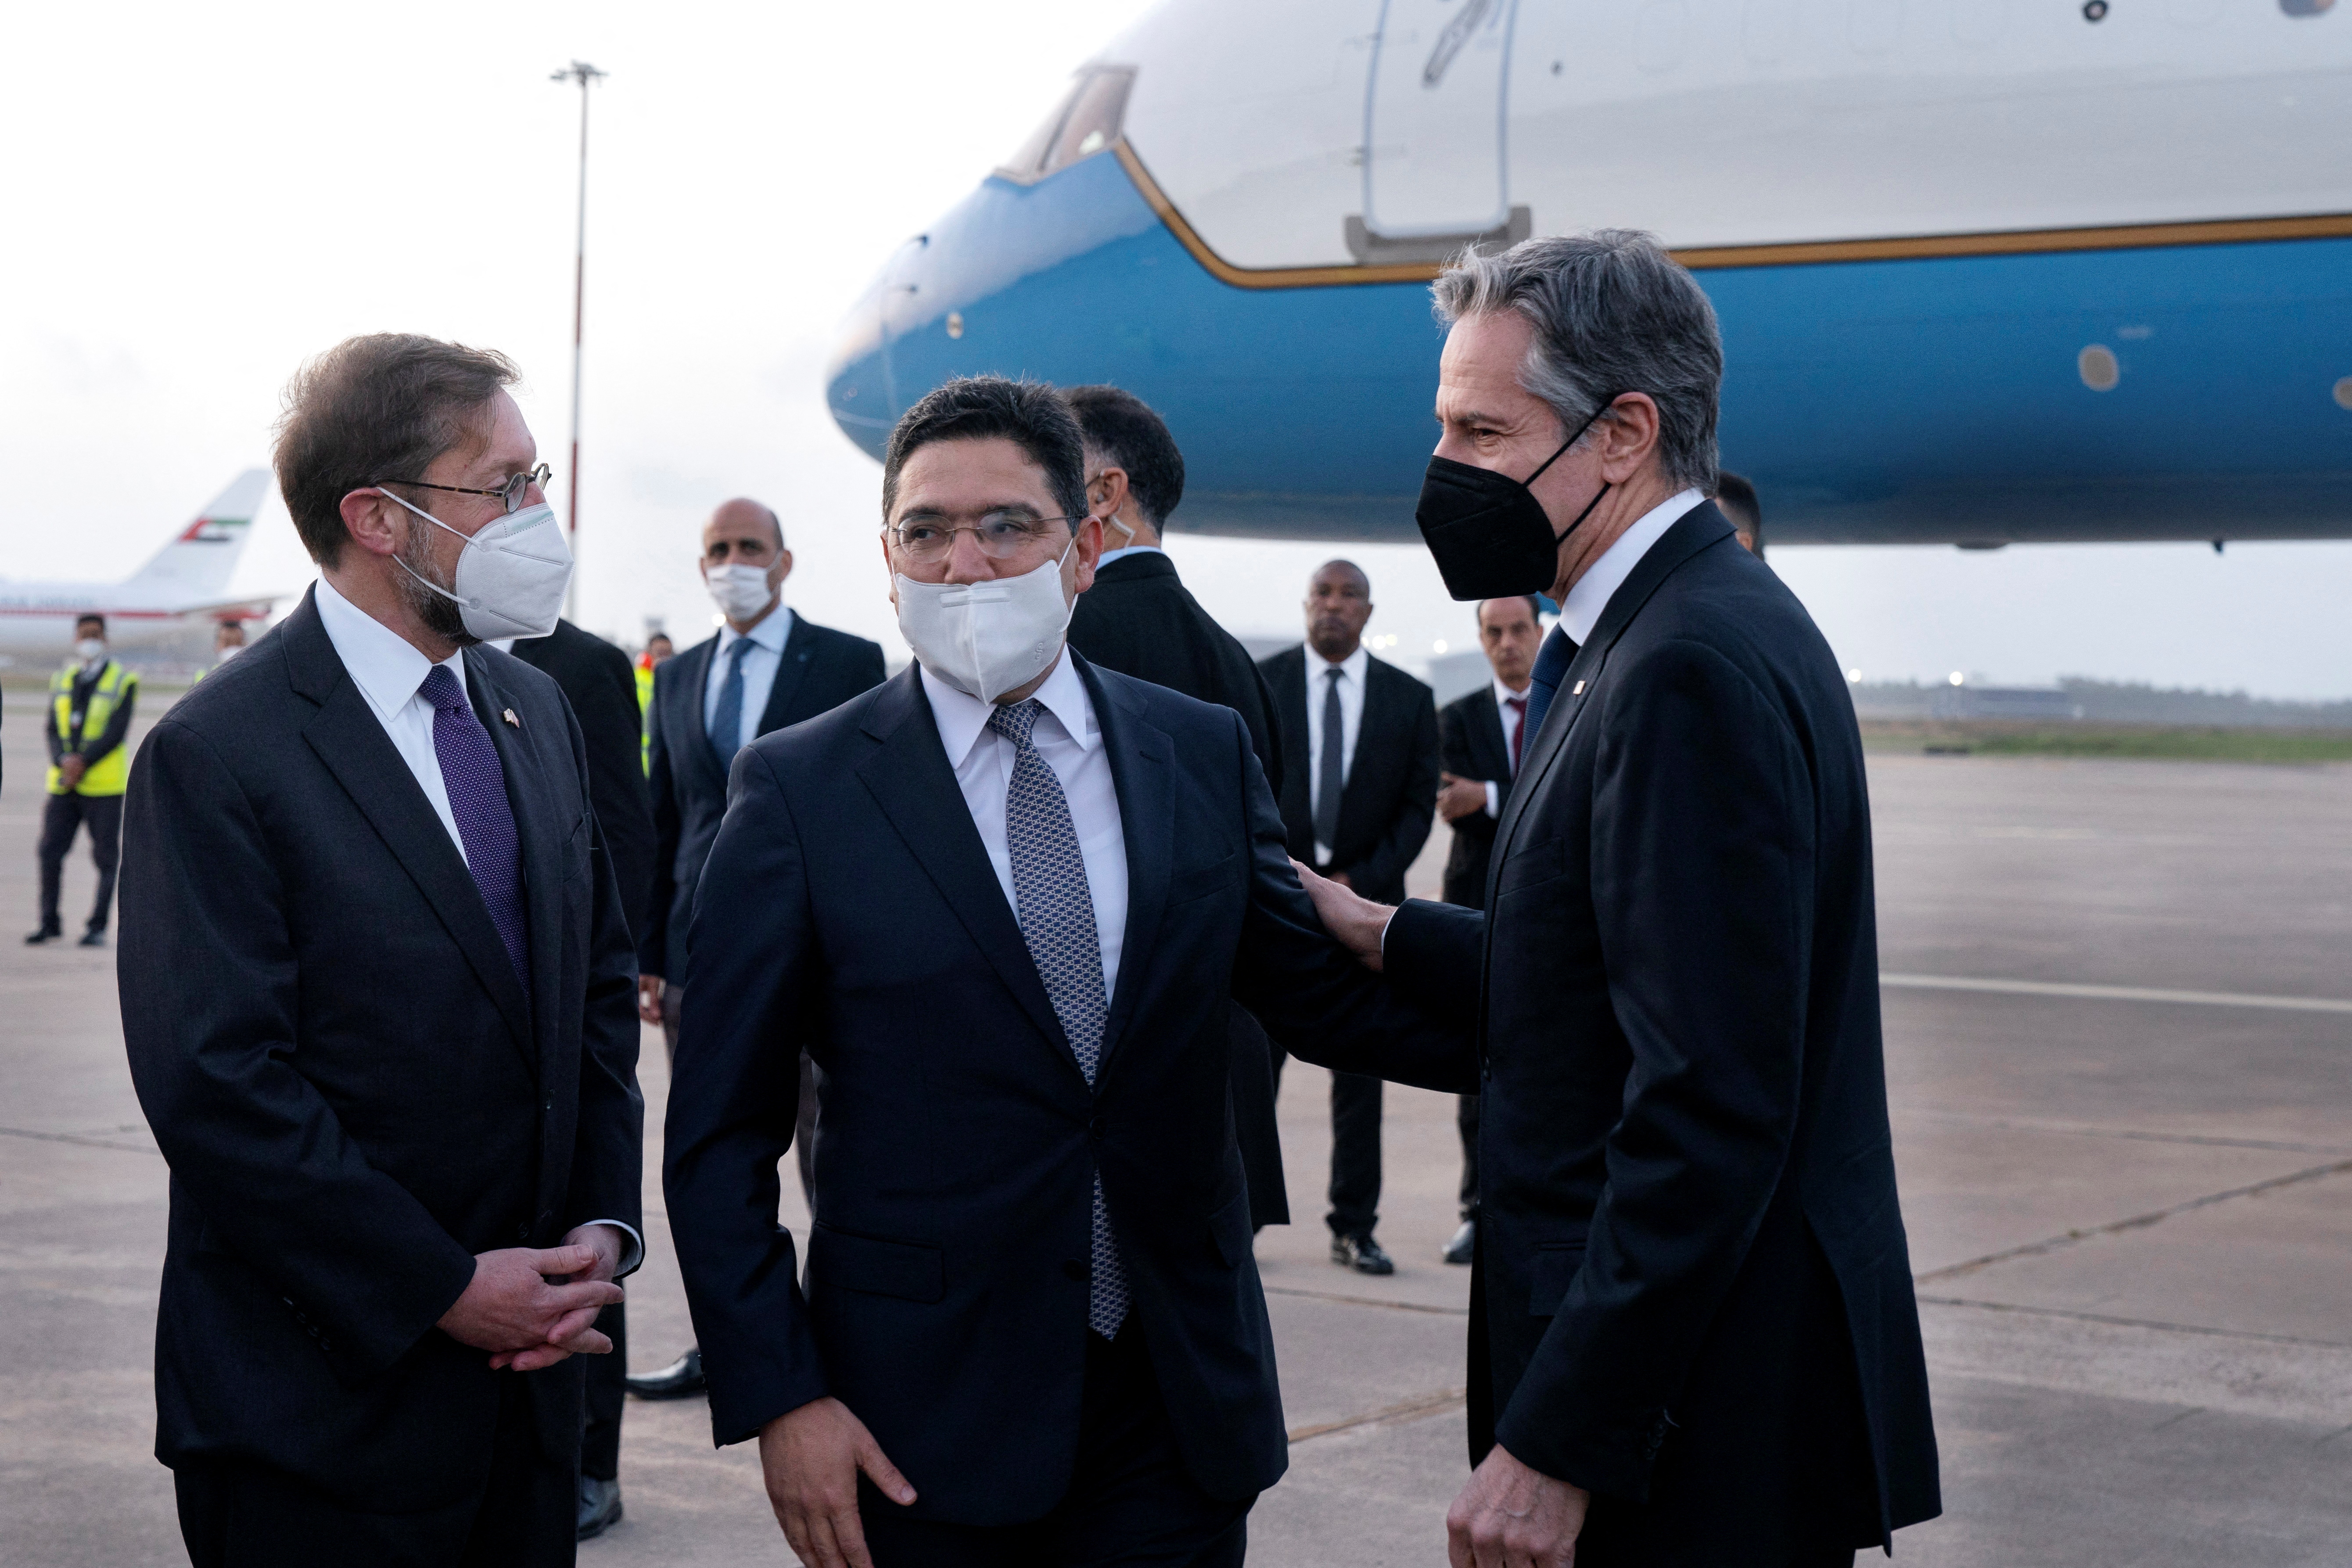 El Secretario de Estado de los Estados Unidos, Antony Blinken, es recibido a su llegada a Rabat por el Ministro de Relaciones Exteriores de Marruecos, Nasser Bourita